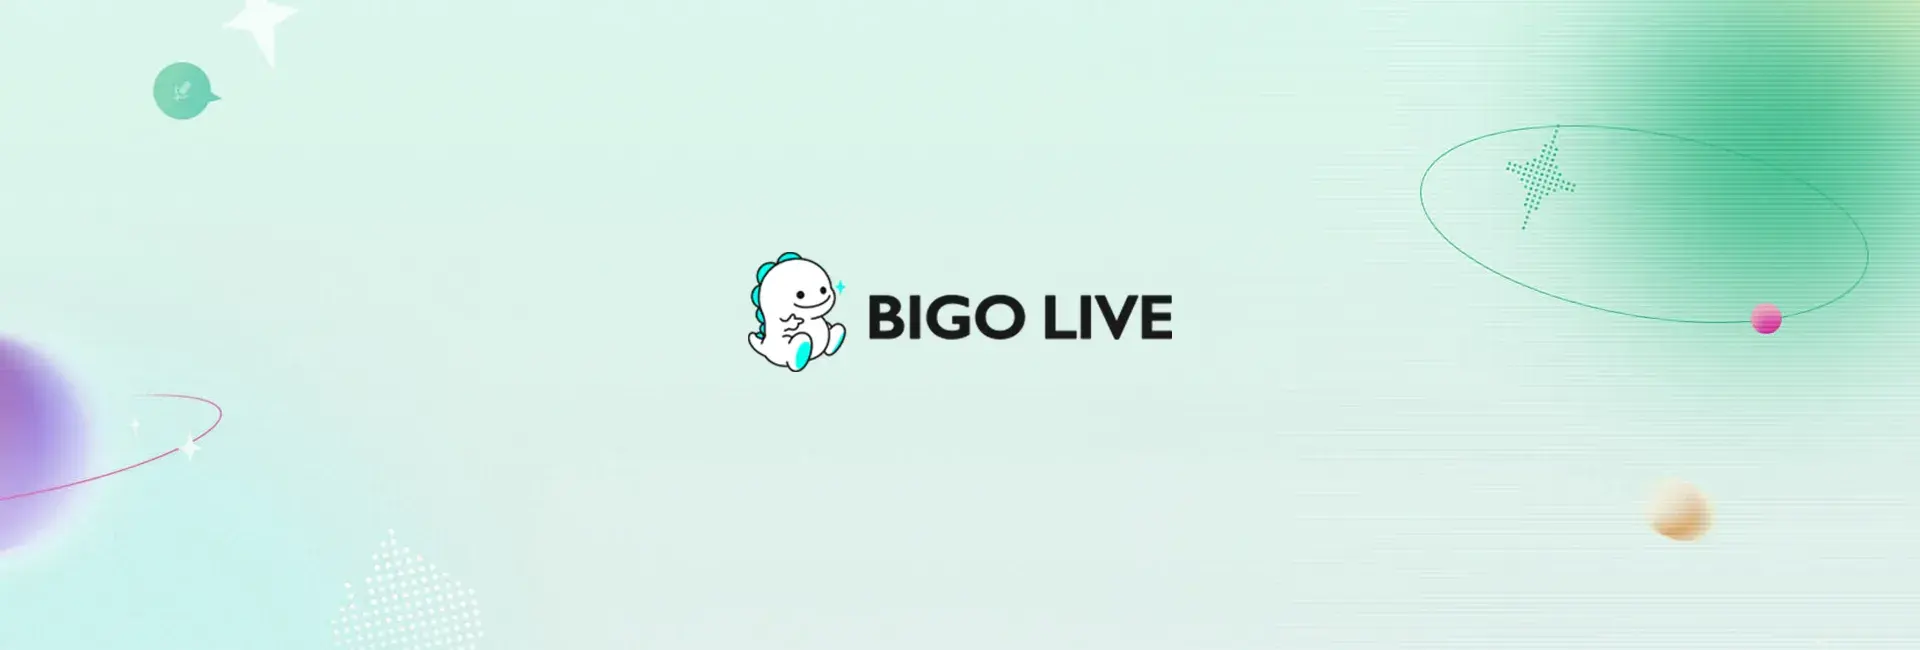 Bigo Live - 2400 Diamonds (Global)